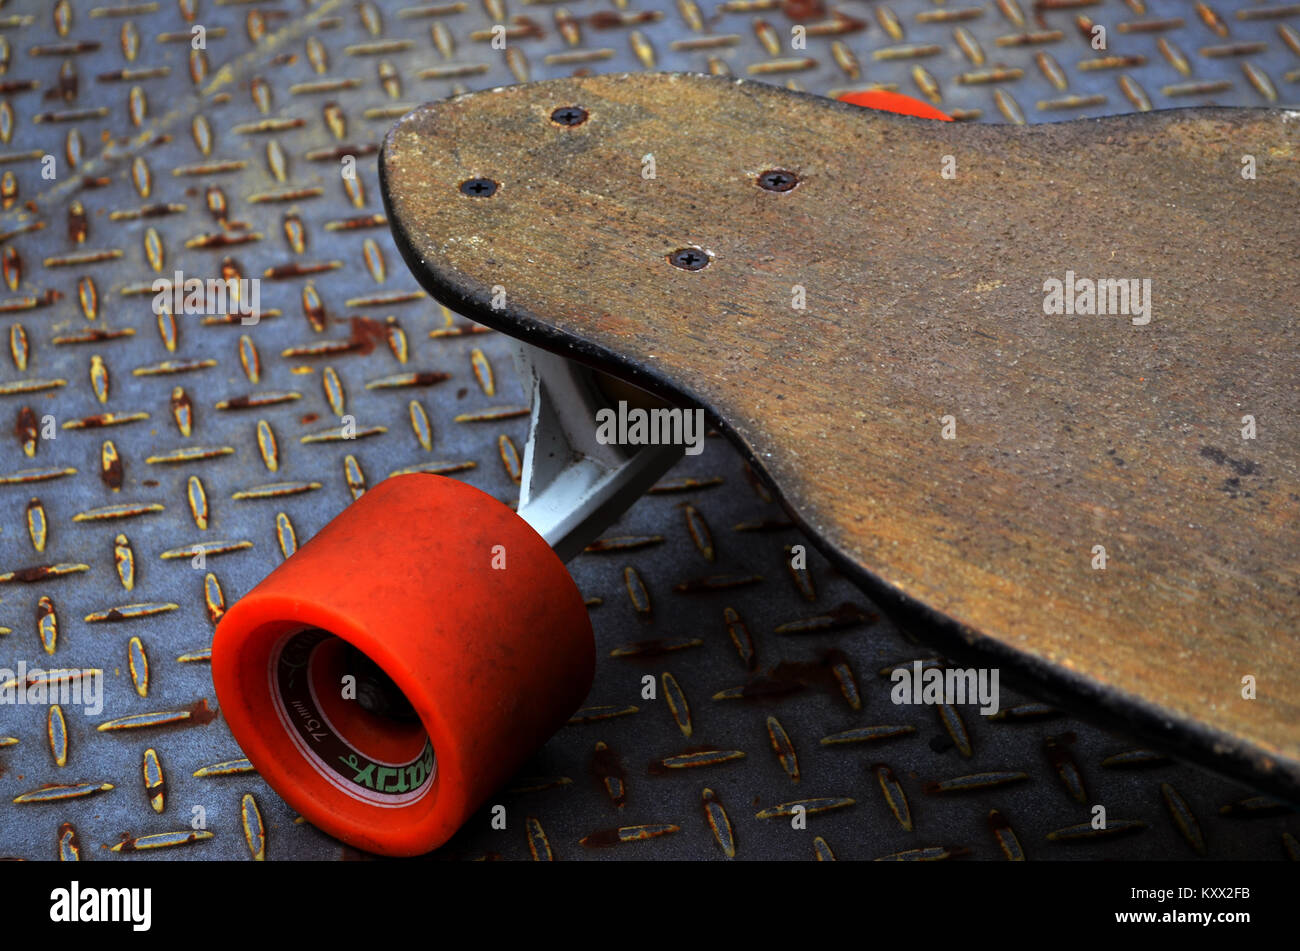 Longboard skateboard on metal backdrop Stock Photo